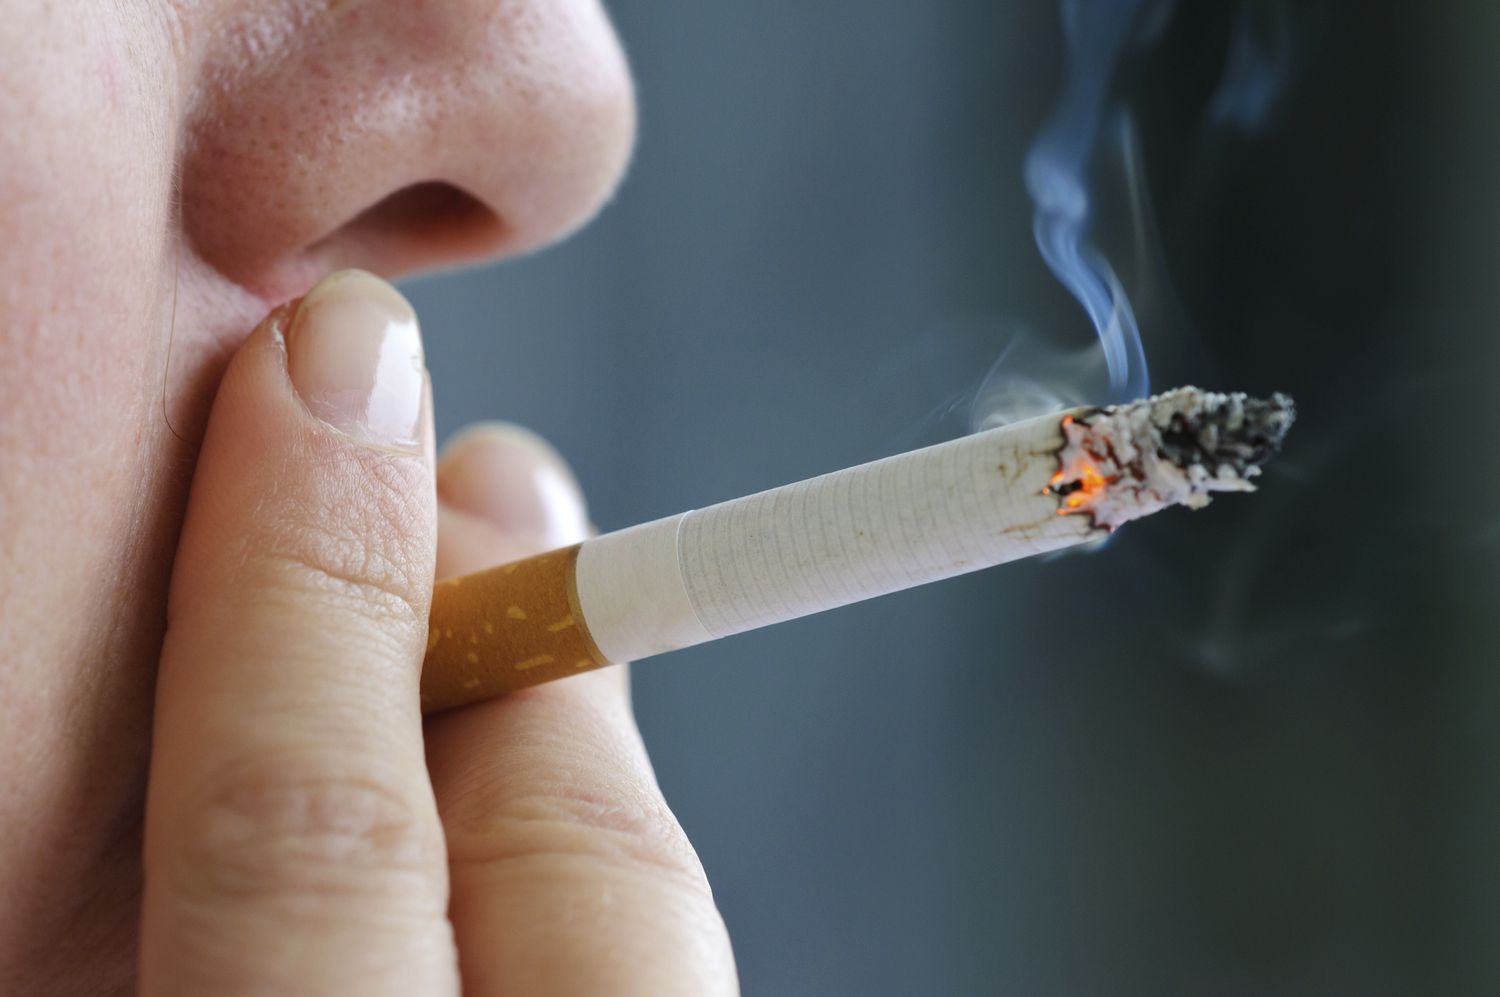 التدخين هو عادة ضارة تشكل تهديدًا كبيرًا لصحة الإنسان